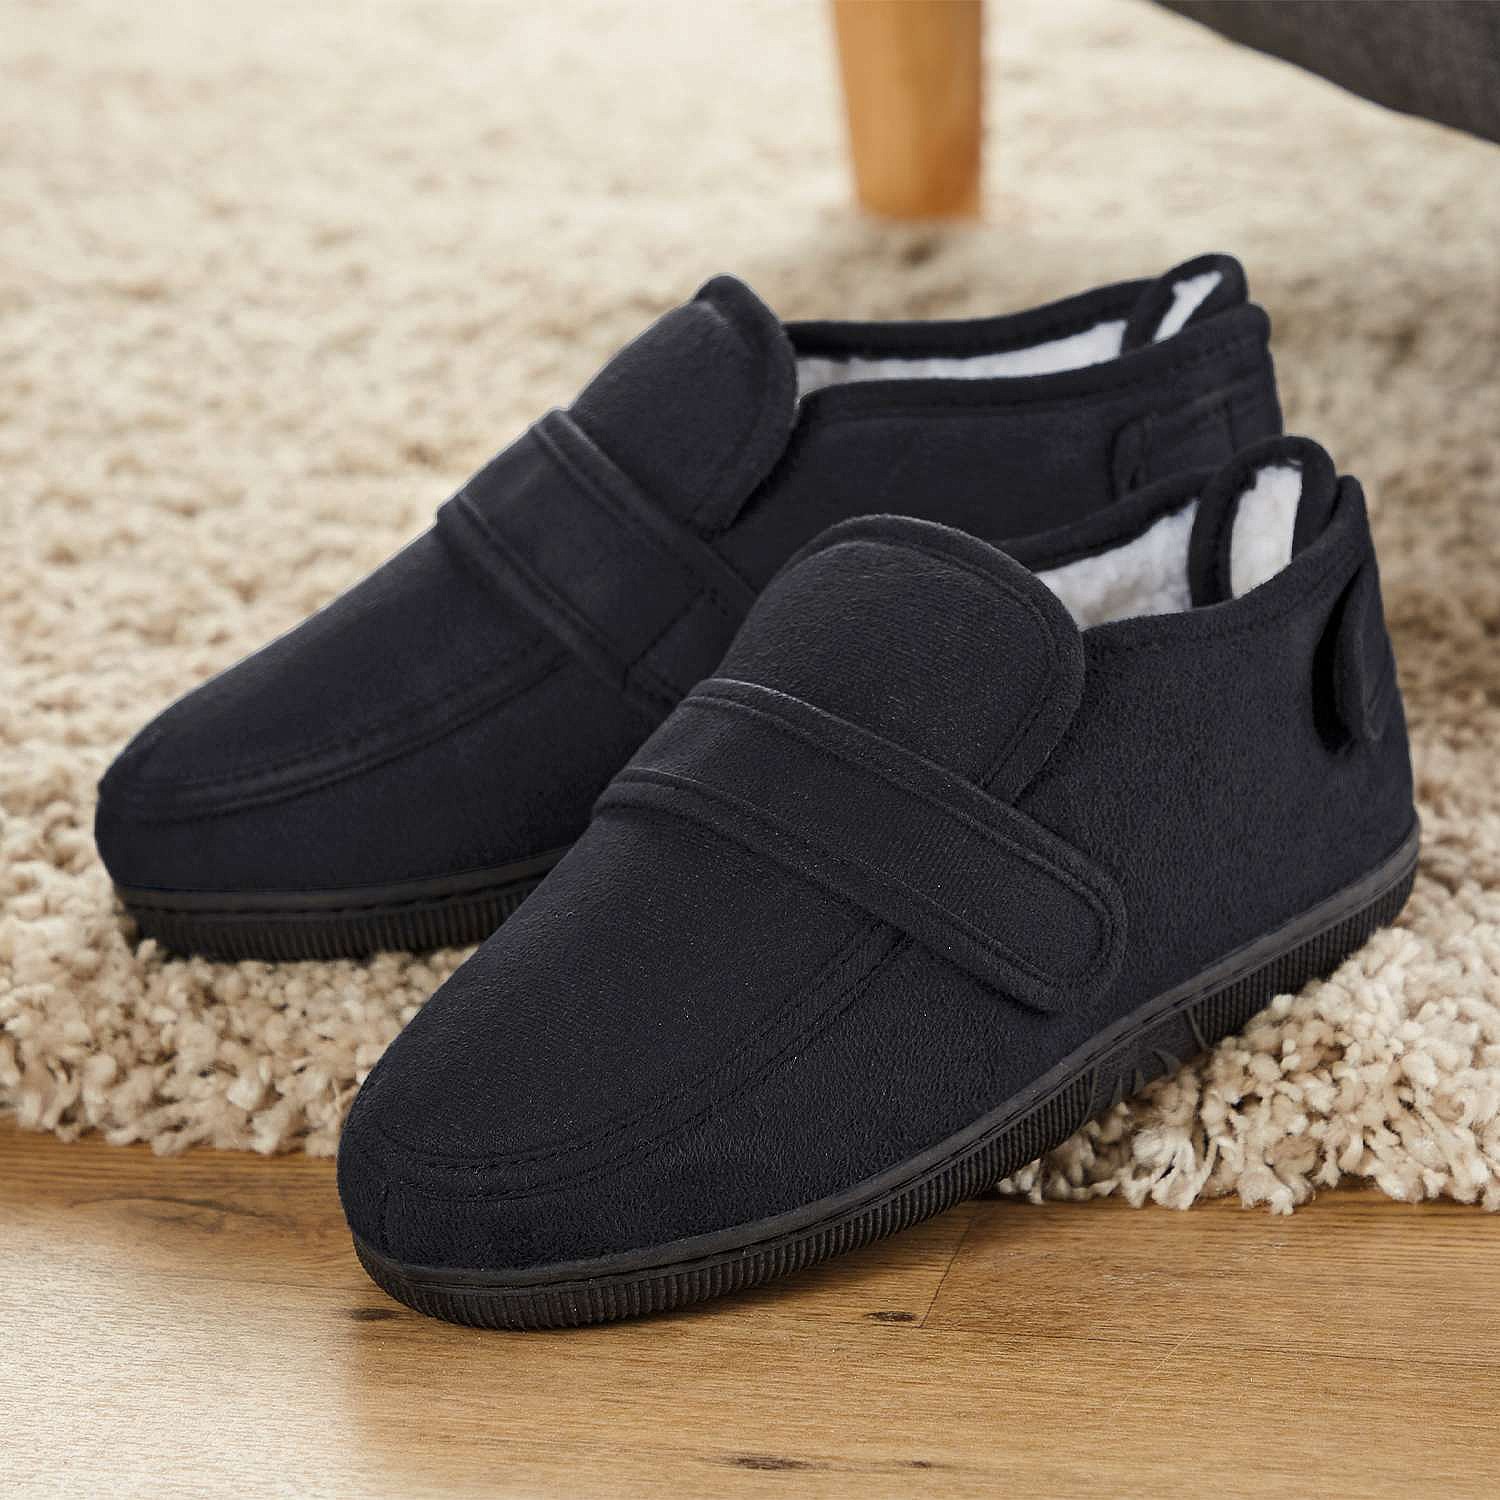 Comfort Shoes - wear indoors \u0026 outdoors 